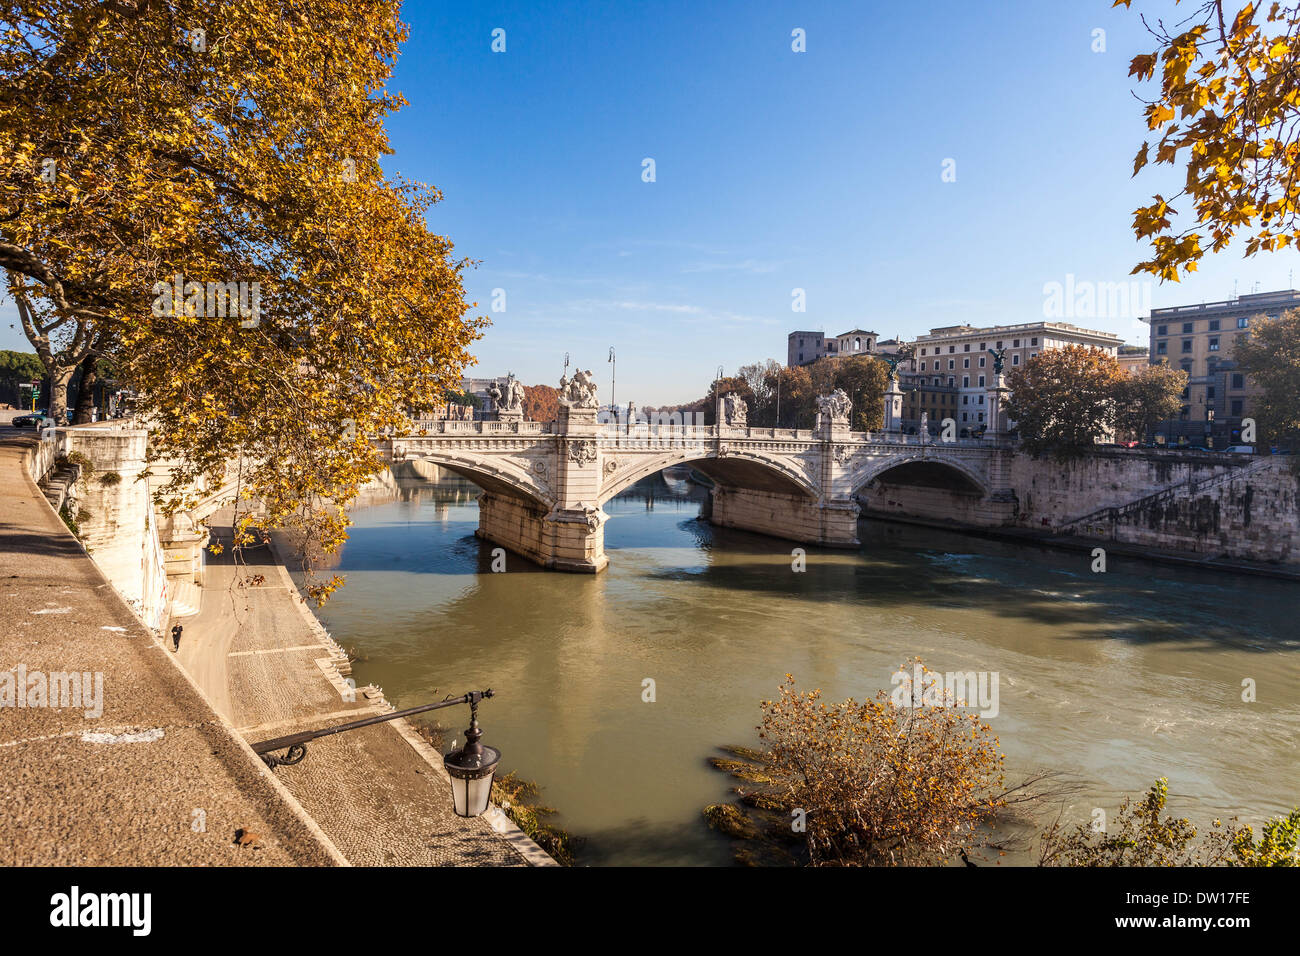 Tiber River scene, Rome Italy. Stock Photo